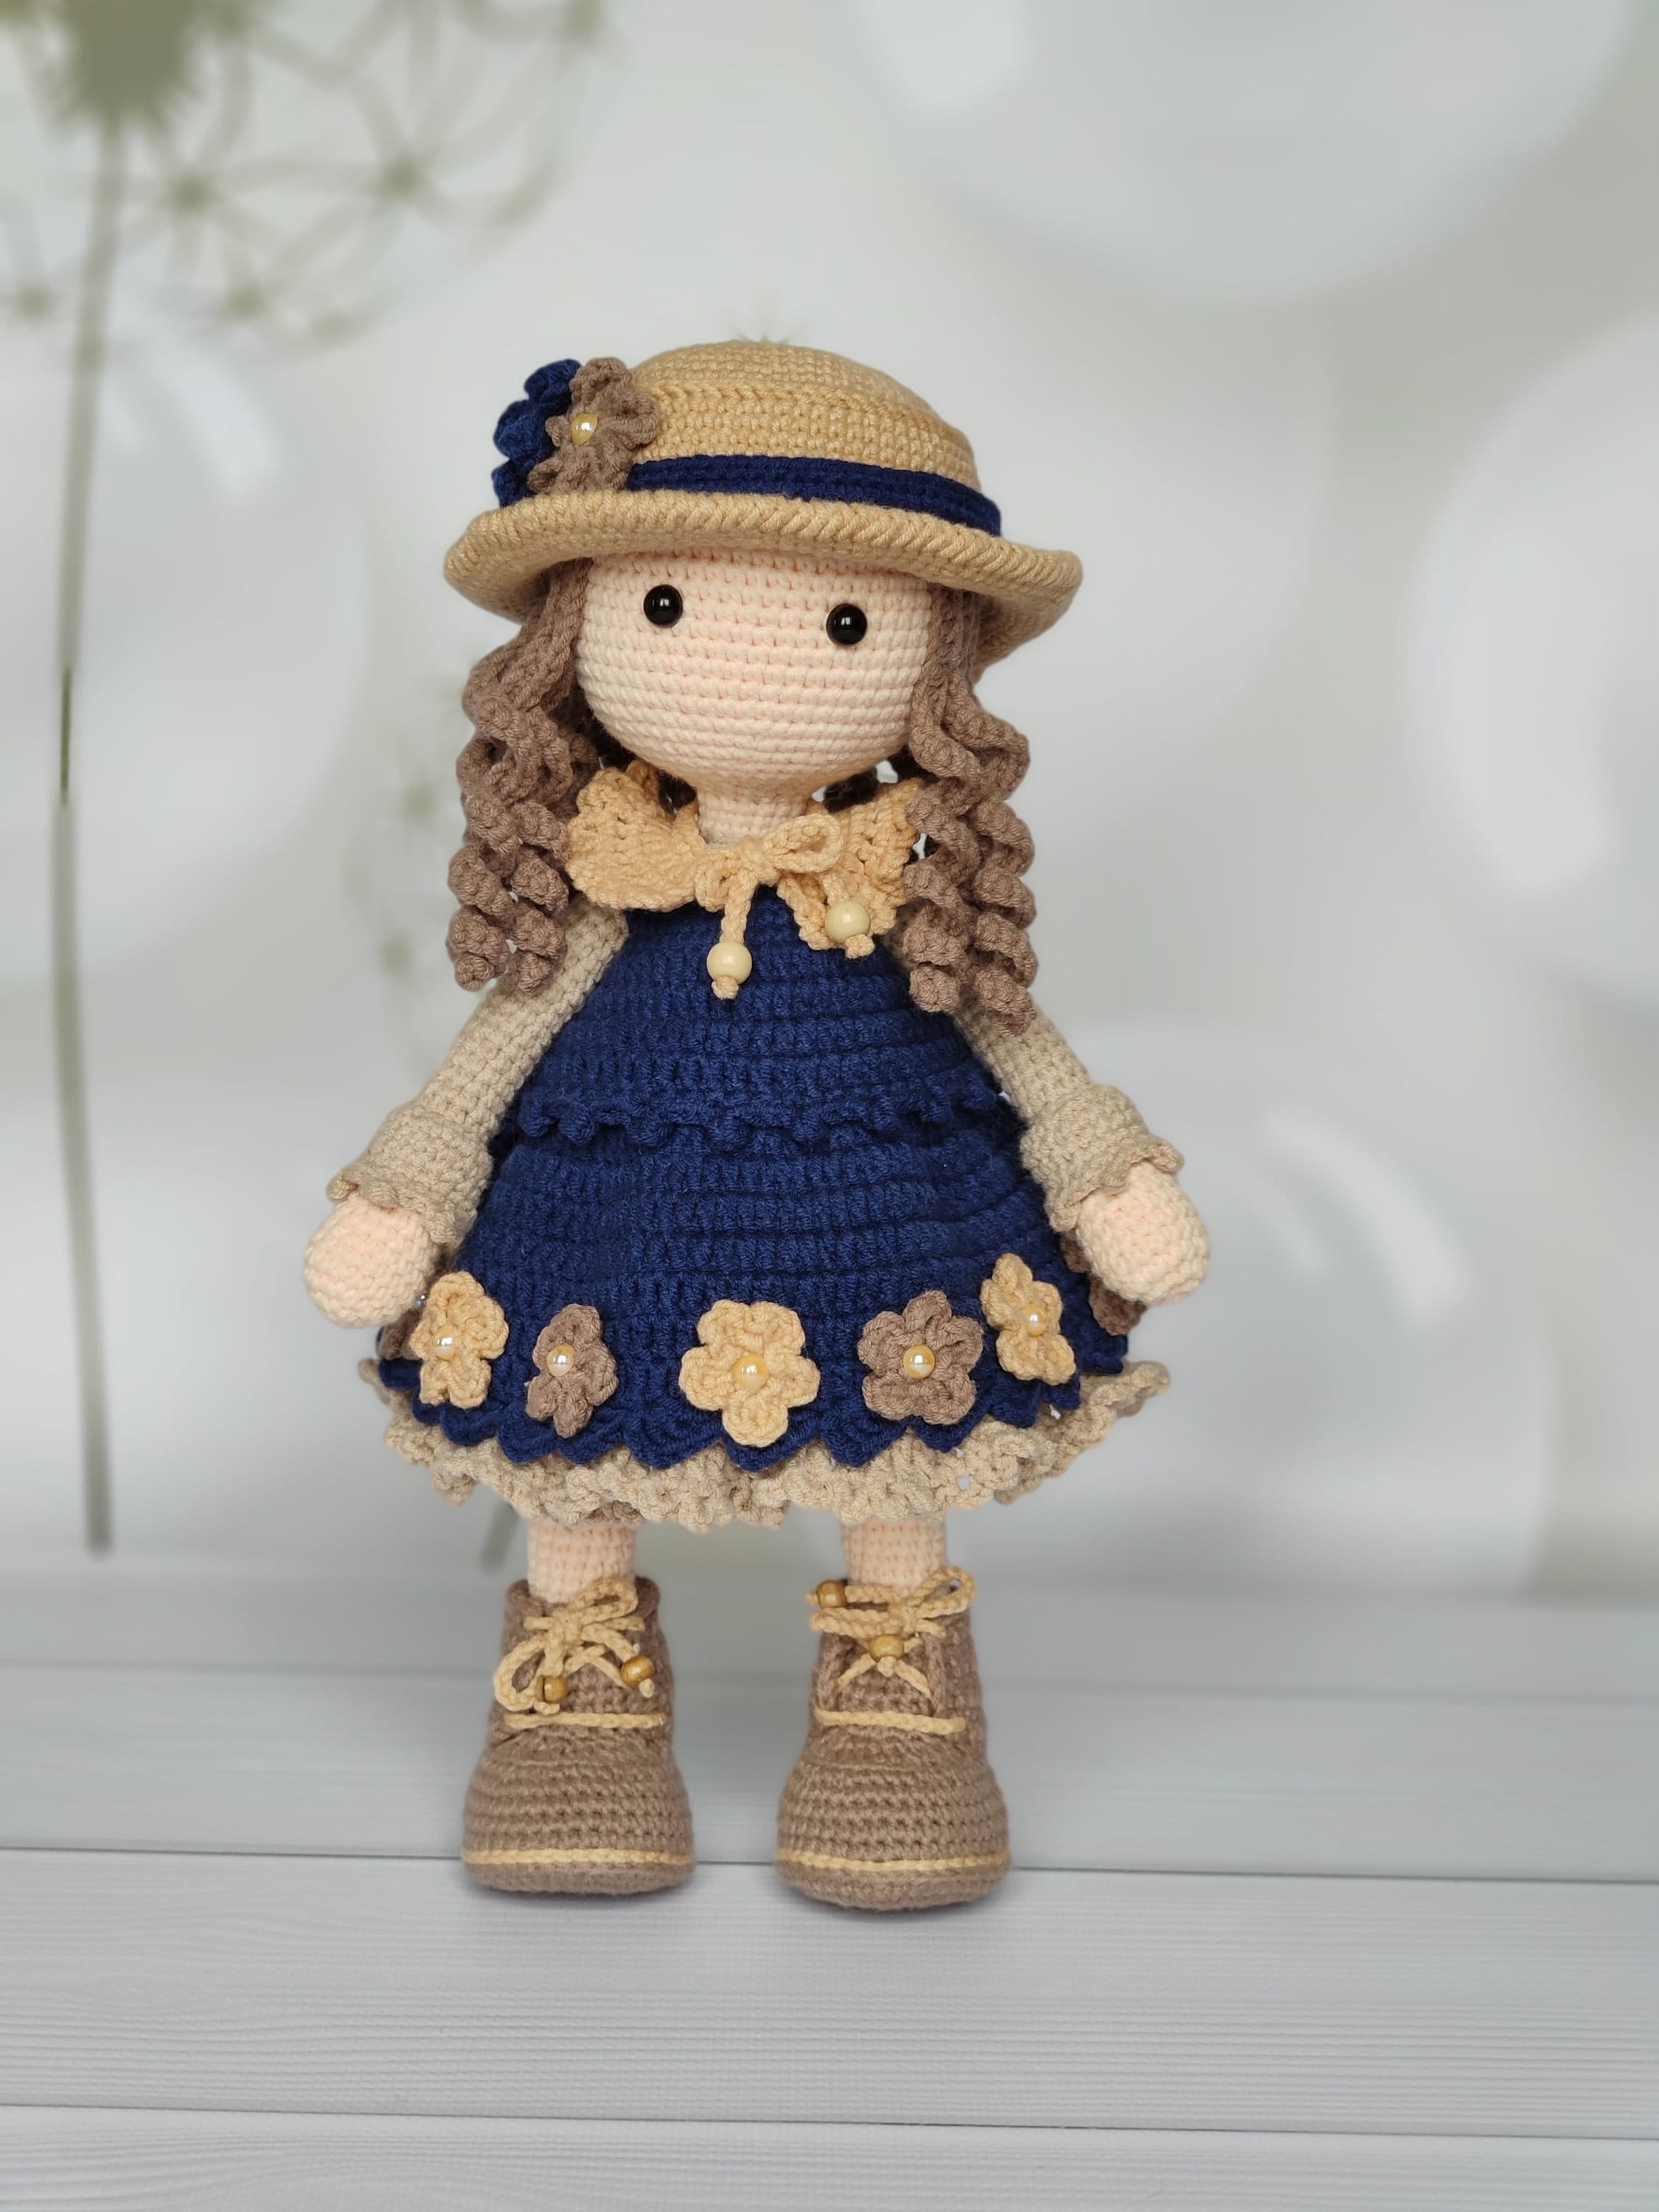 Knitted Doll Crochet Doll Handmade Handmade Toys Interior Doll Etsy